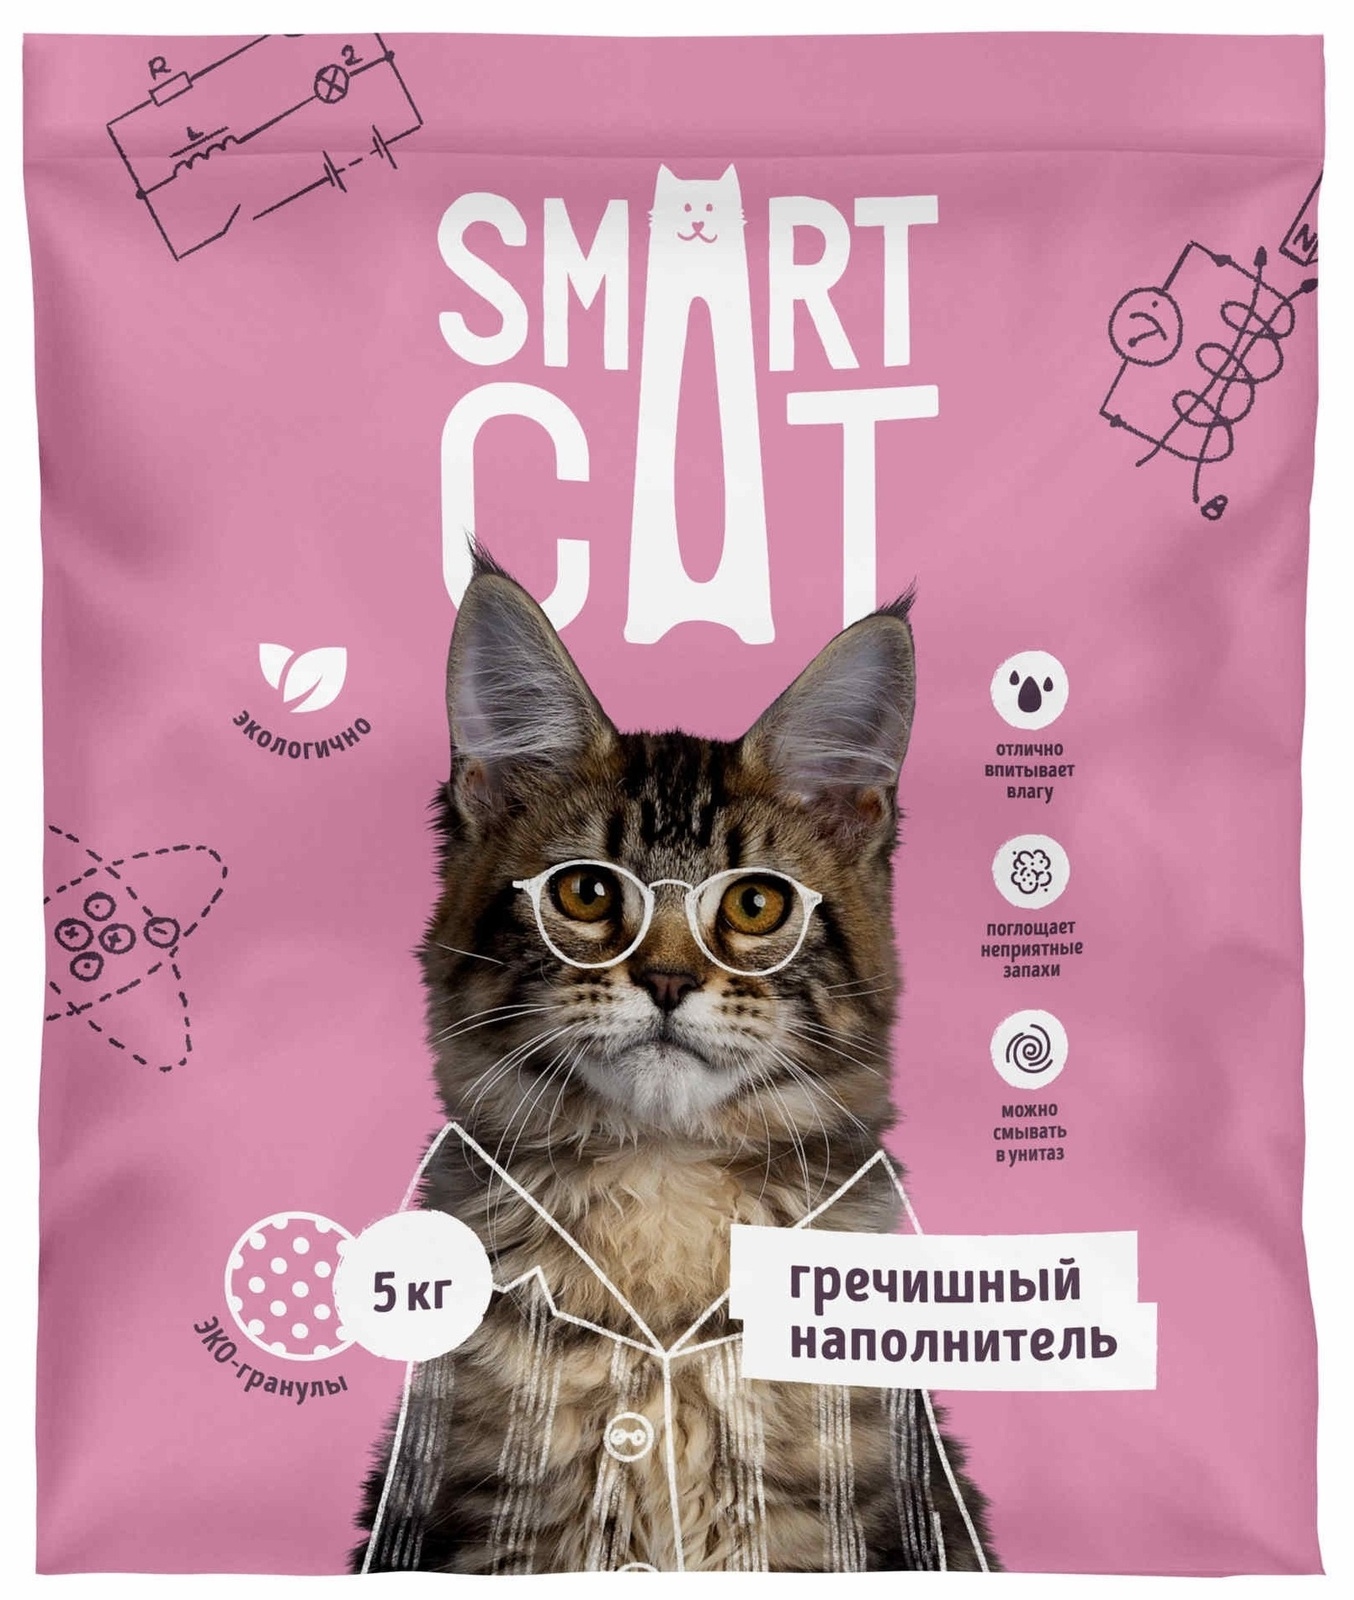 Smart Cat наполнитель Smart Cat наполнитель гречишный наполнитель (5 кг) smart cat наполнитель впитывающий наполнитель 10л 5 кг средняя фракция 66ур25 5 кг 52862 1 шт